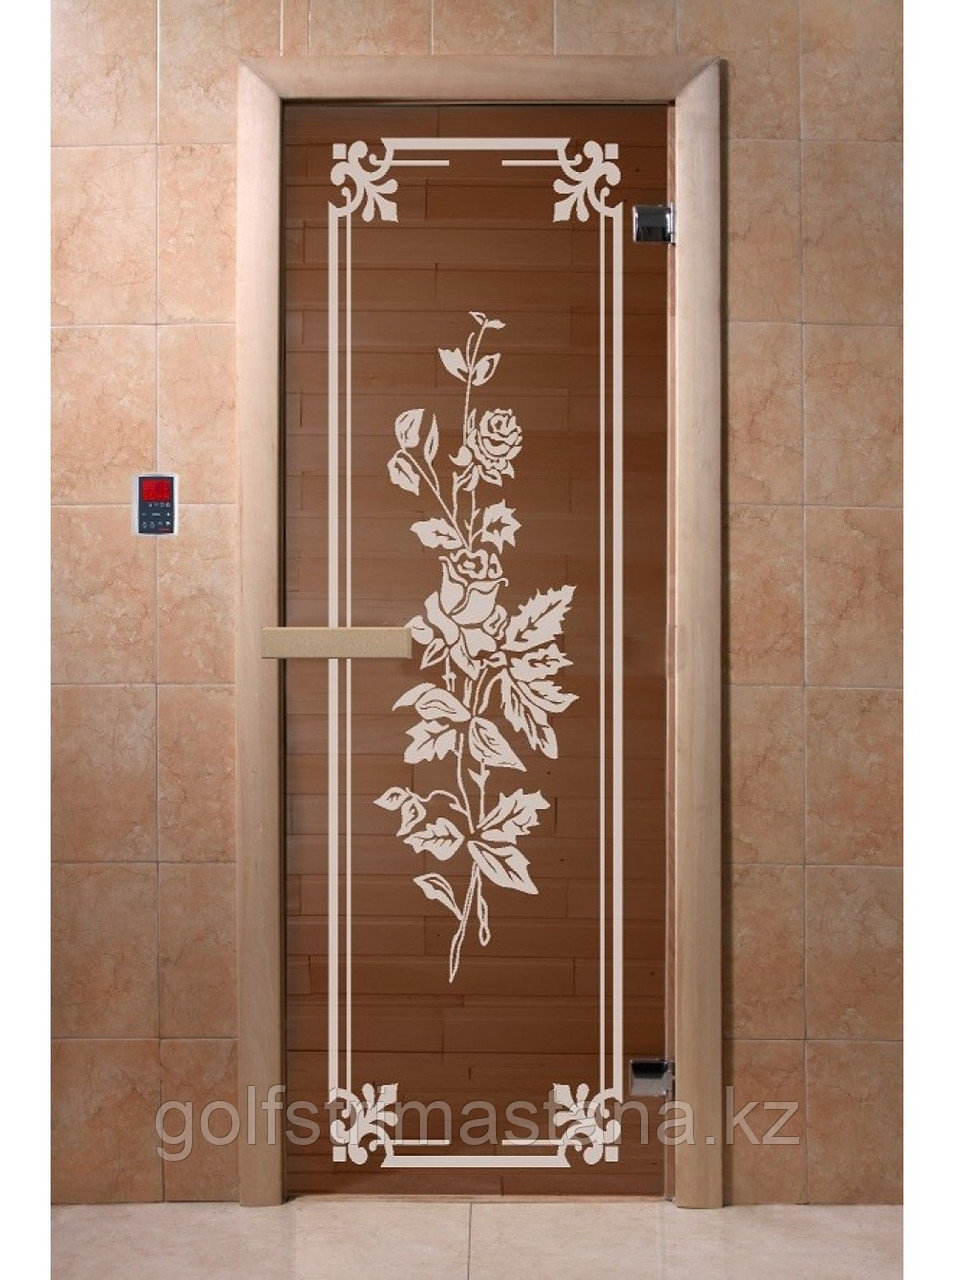 Дверь для бани "Розы бронза" 1900*700, 6мм, 2 петли